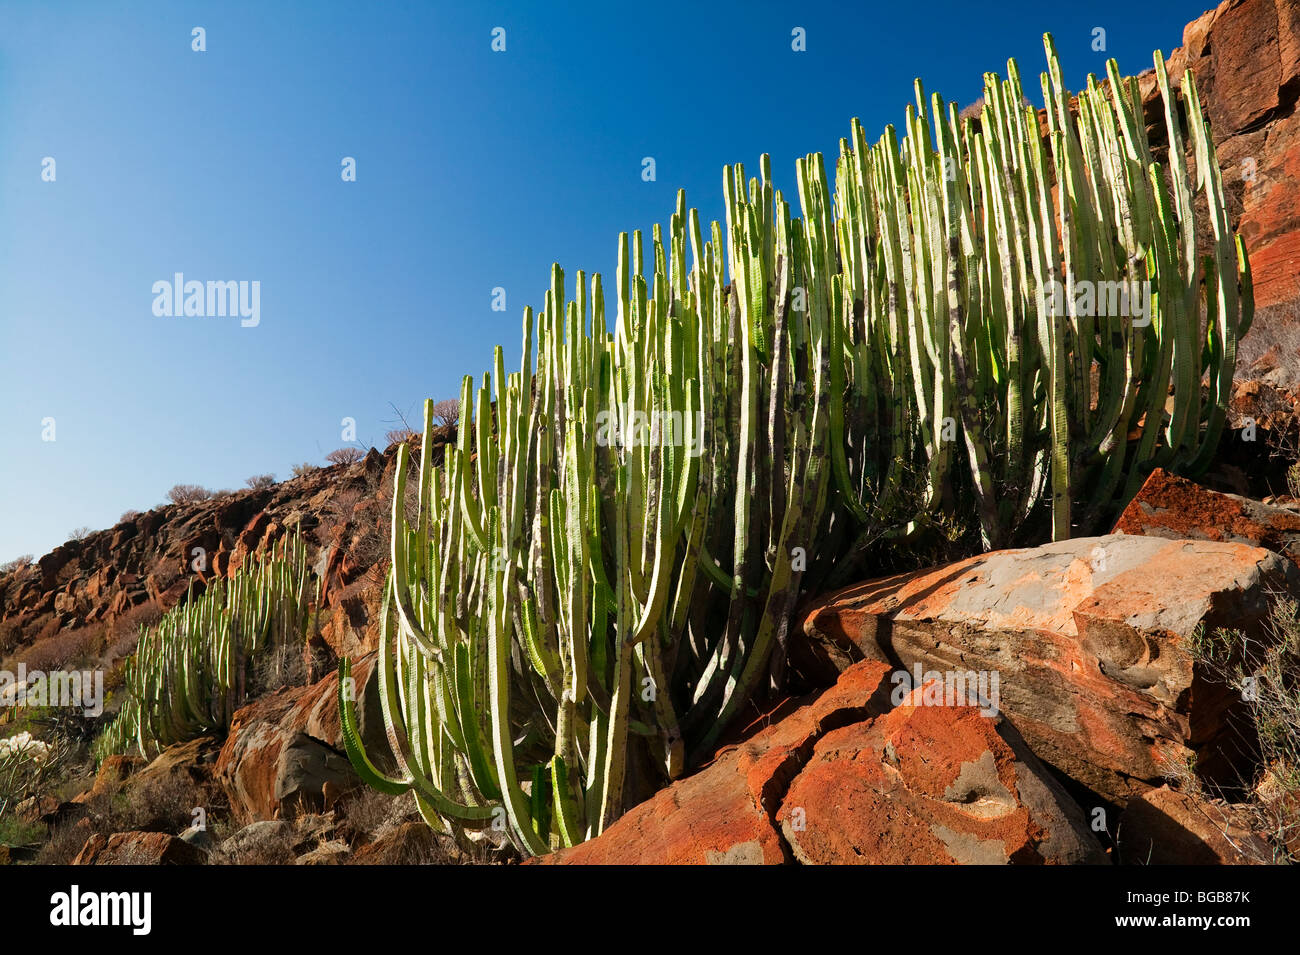 Las plantas de cactus, de la isla de Tenerife, Islas Canarias Foto de stock